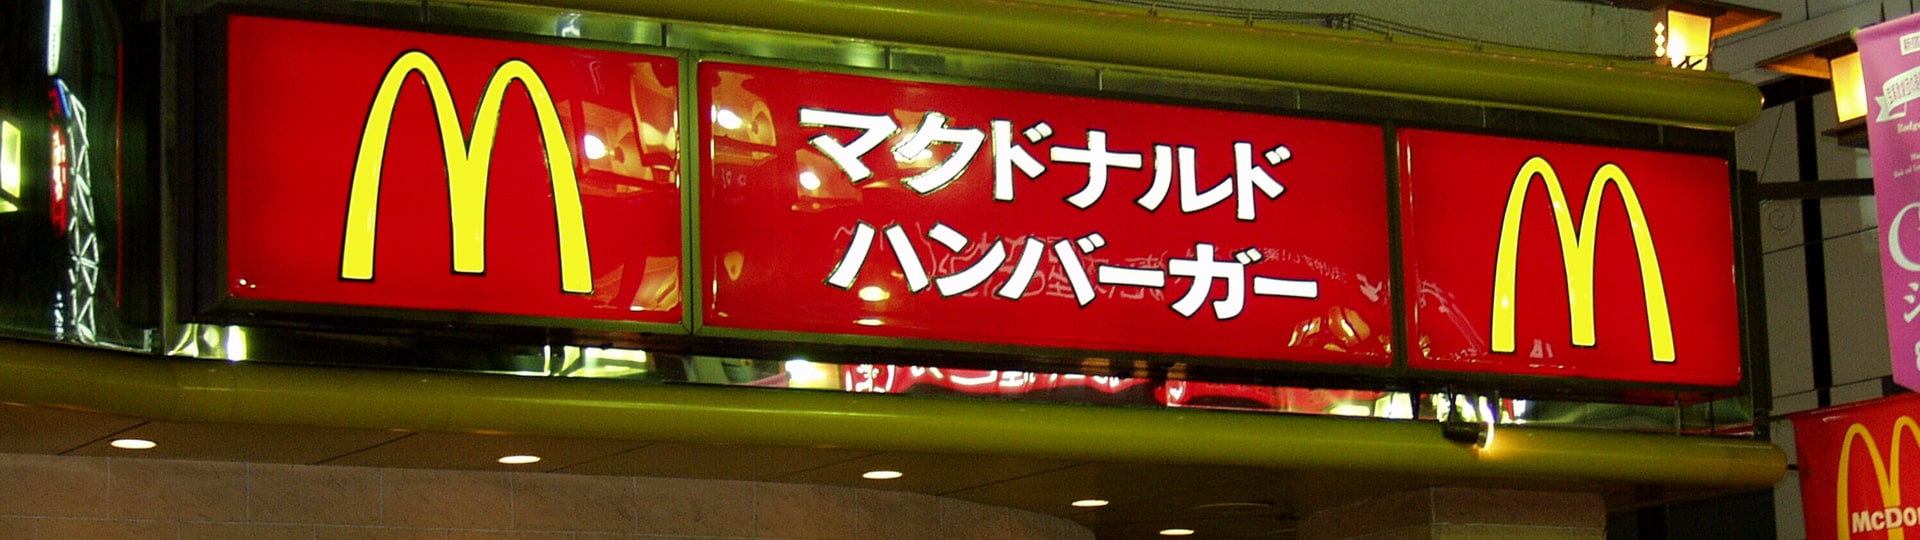 McDonald' v Japonsku nemá dost bramborových hranolků